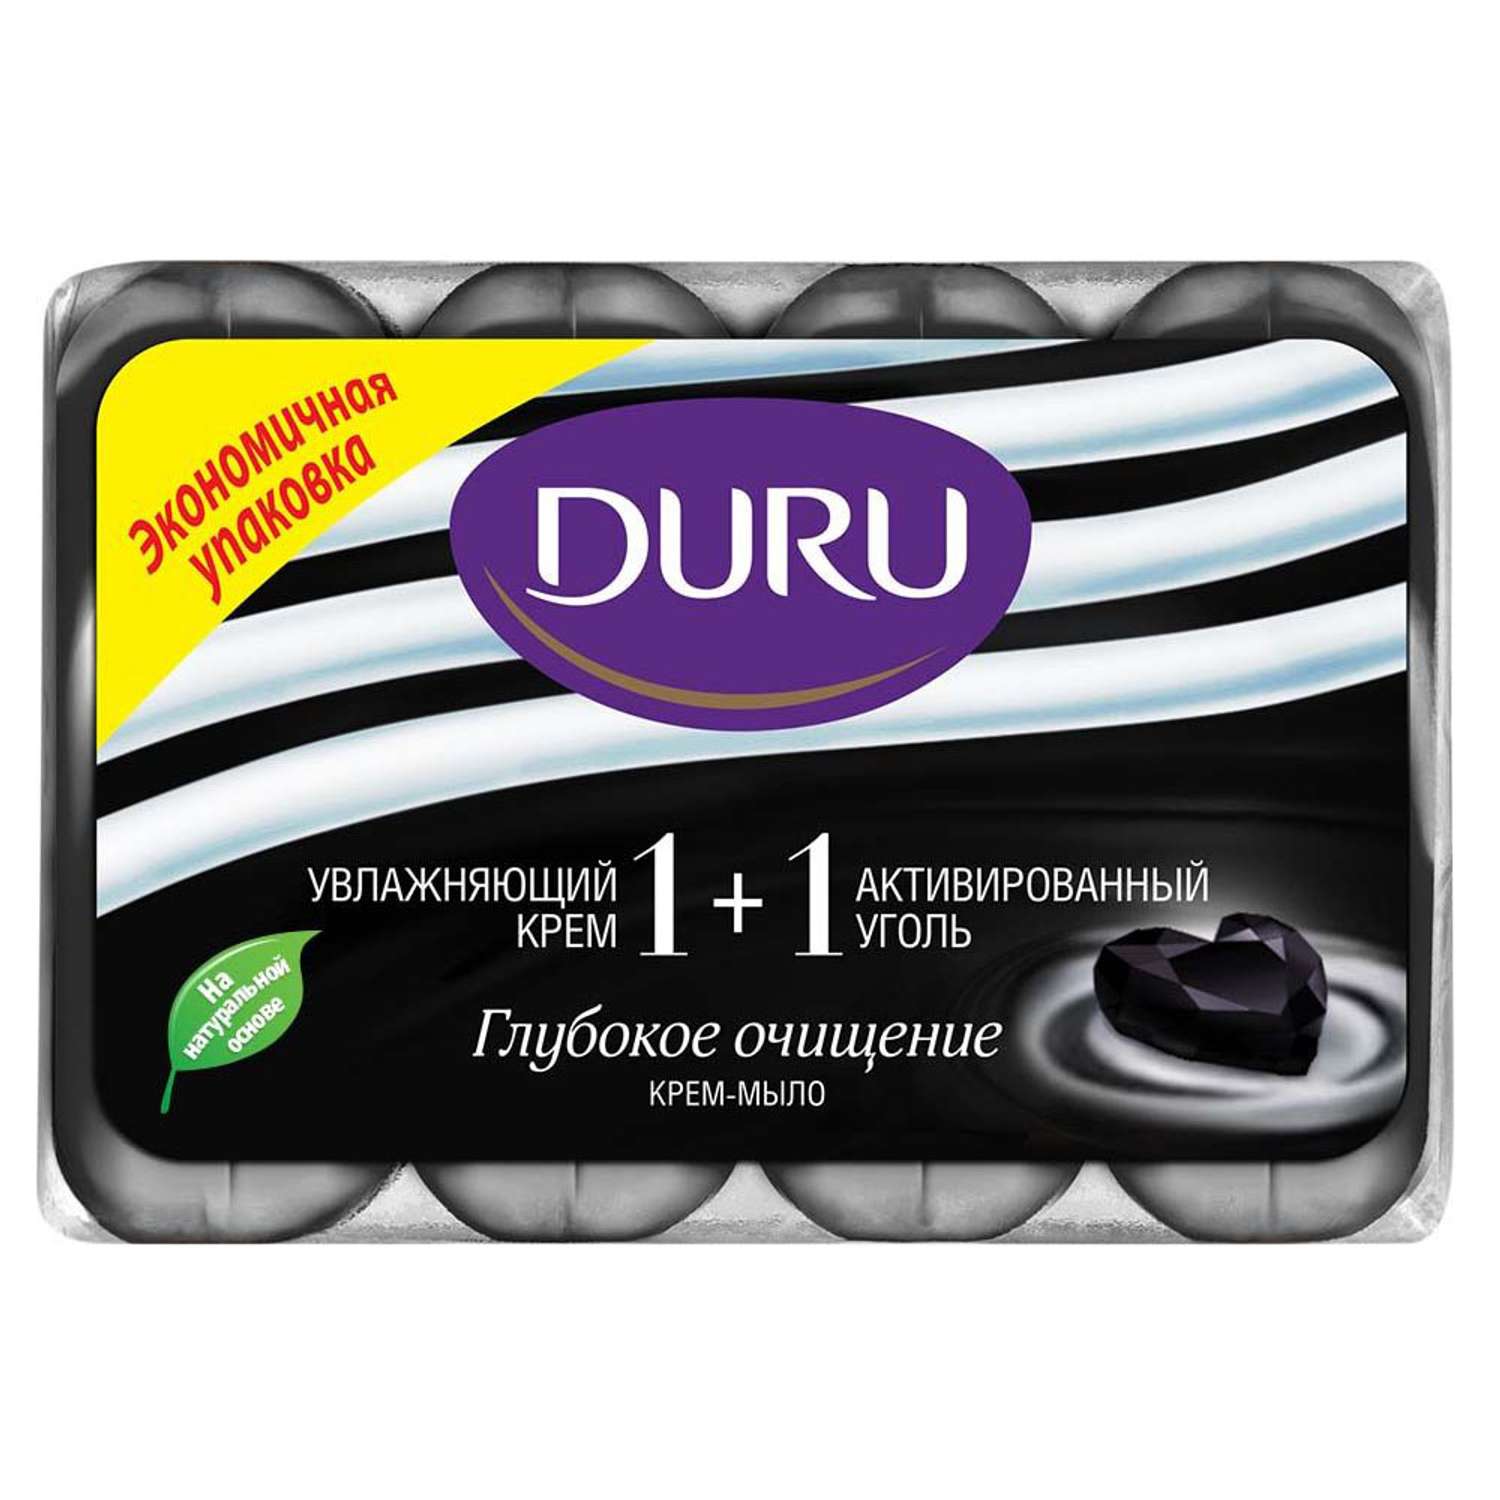 Мыло DURU Soft Sensation туалетное Увлажняющий крем+активированный уголь 4*90г - фото 1